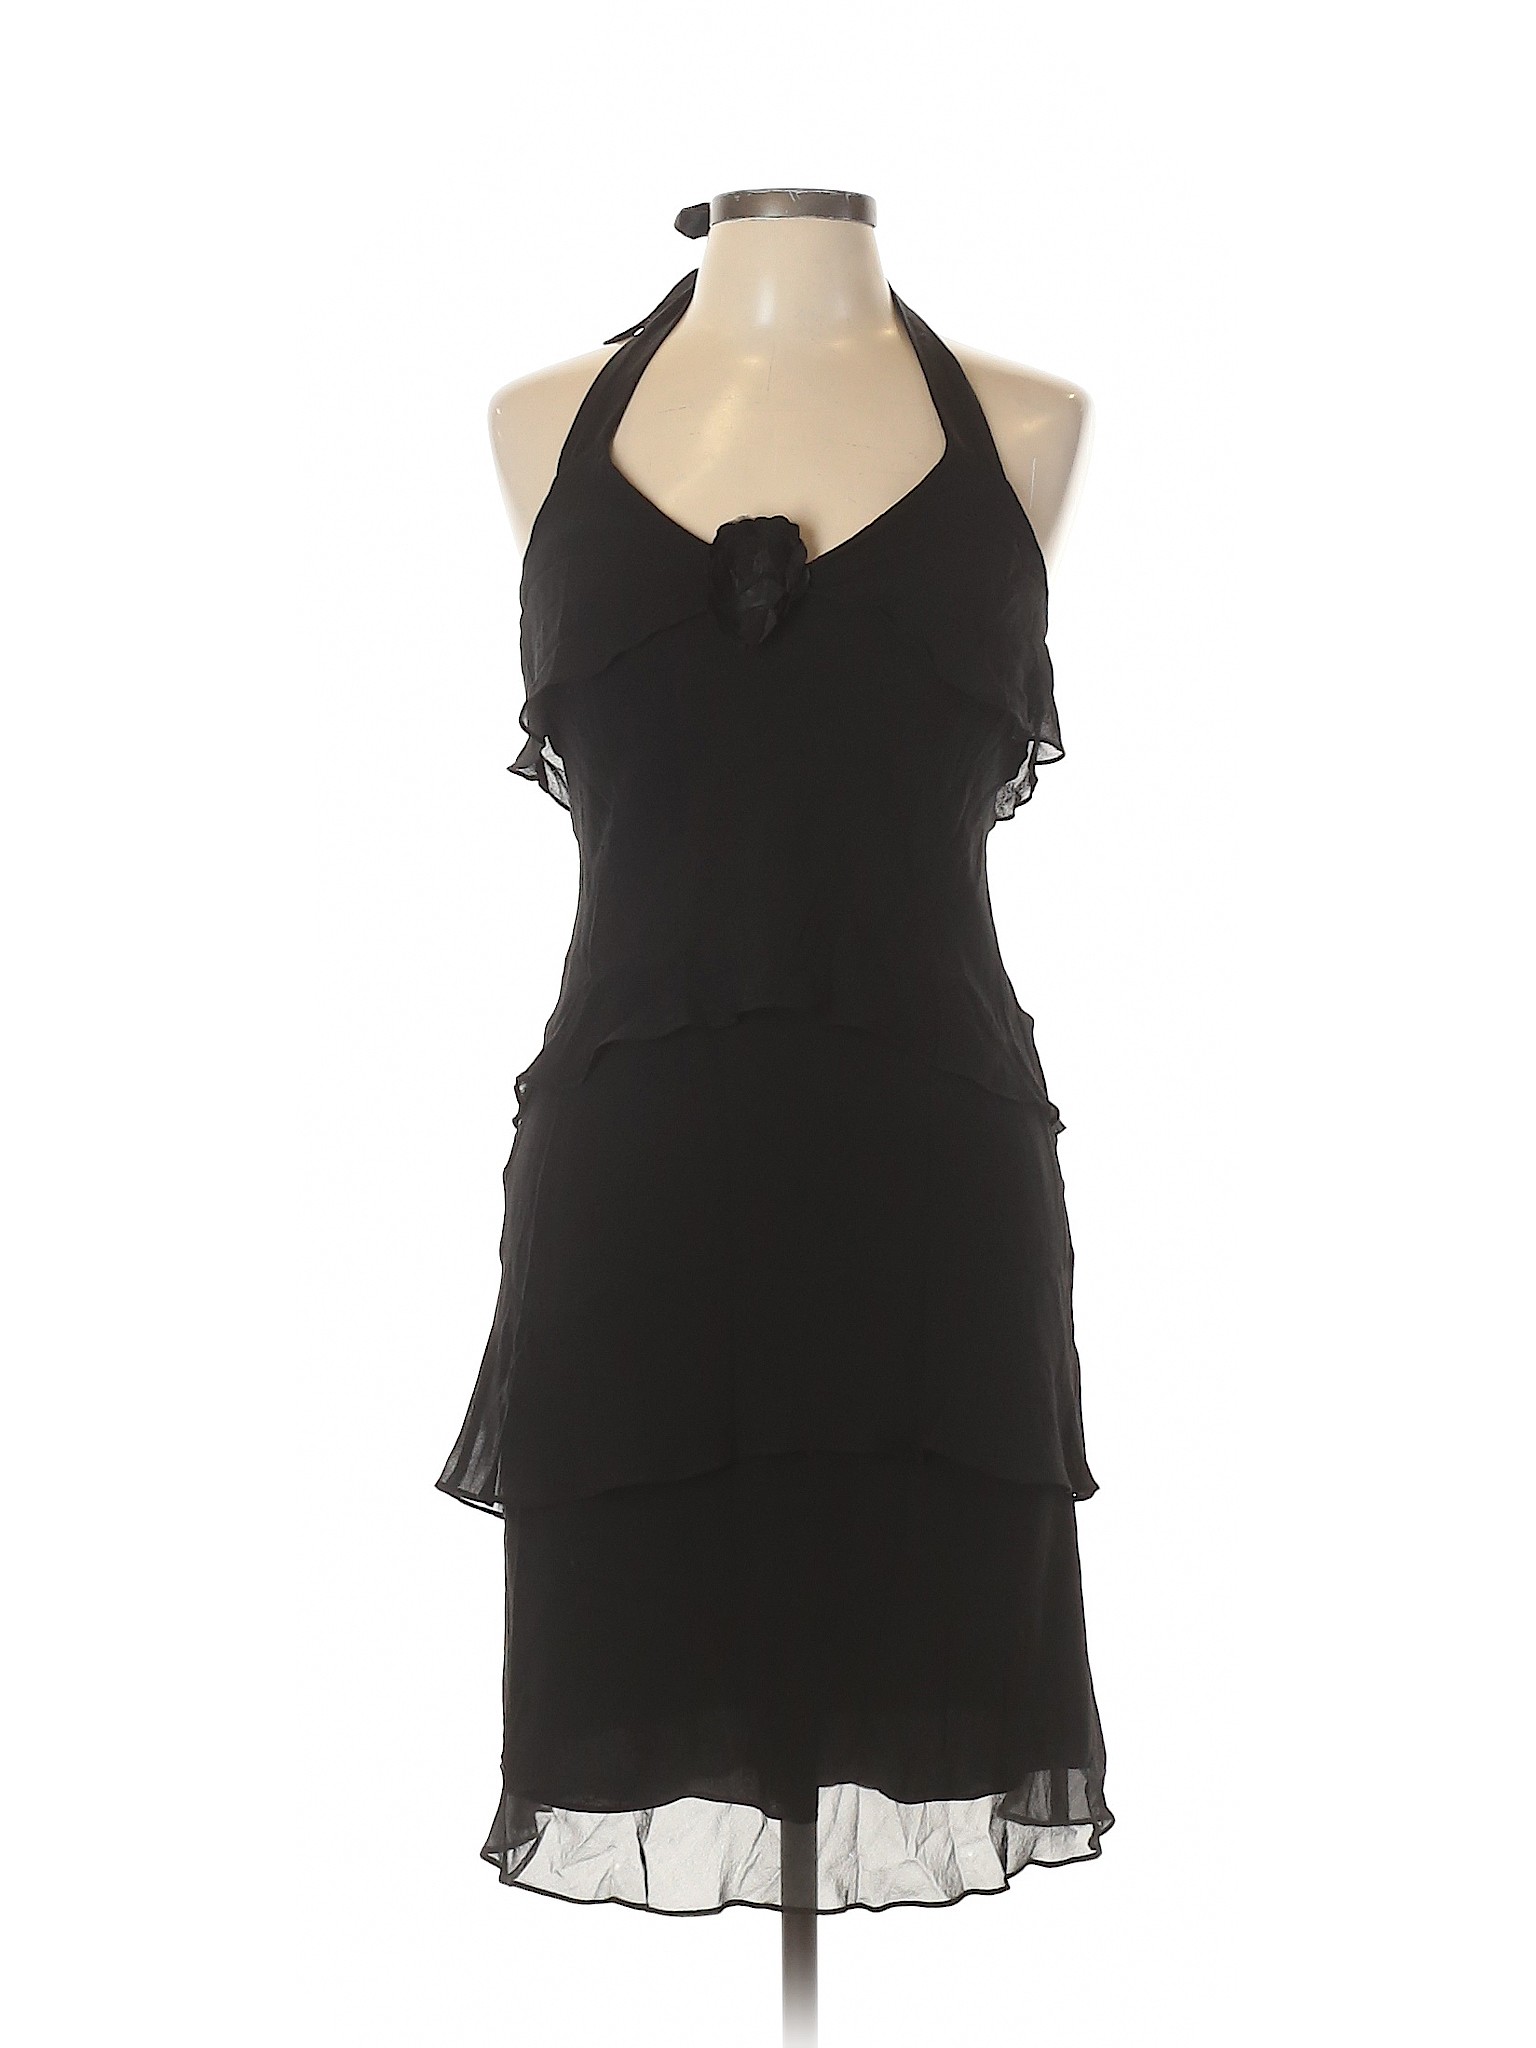 Jones New York Women Black Casual Dress 10 | eBay